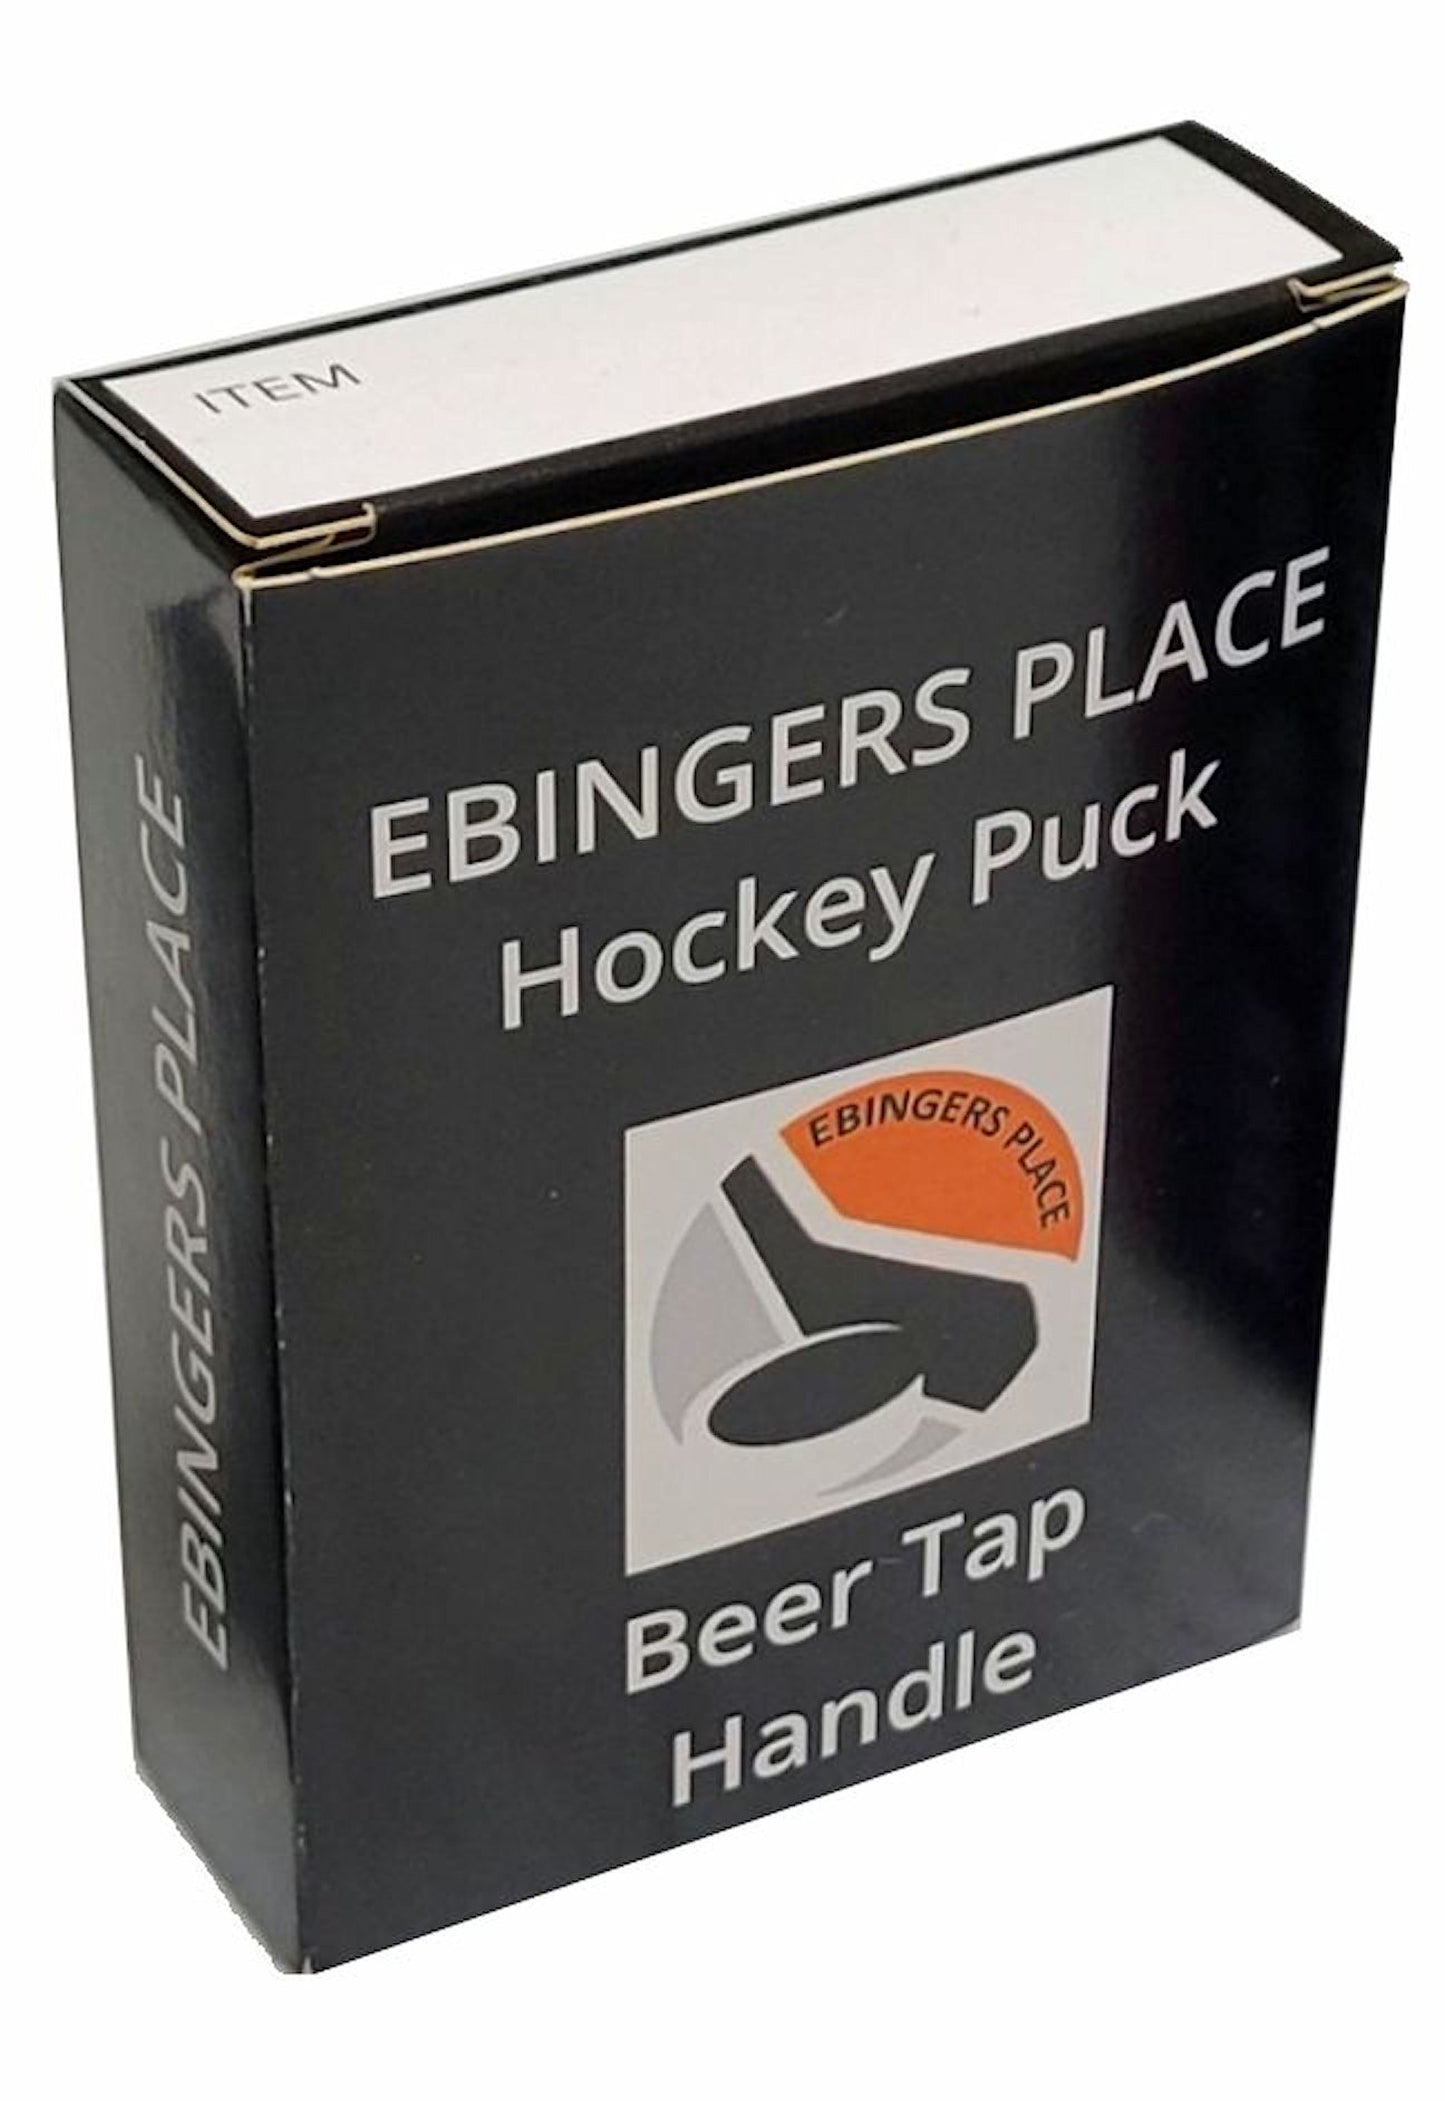 Philadelphia Flyers Reverse Series Hockey Puck Beer Tap Handle